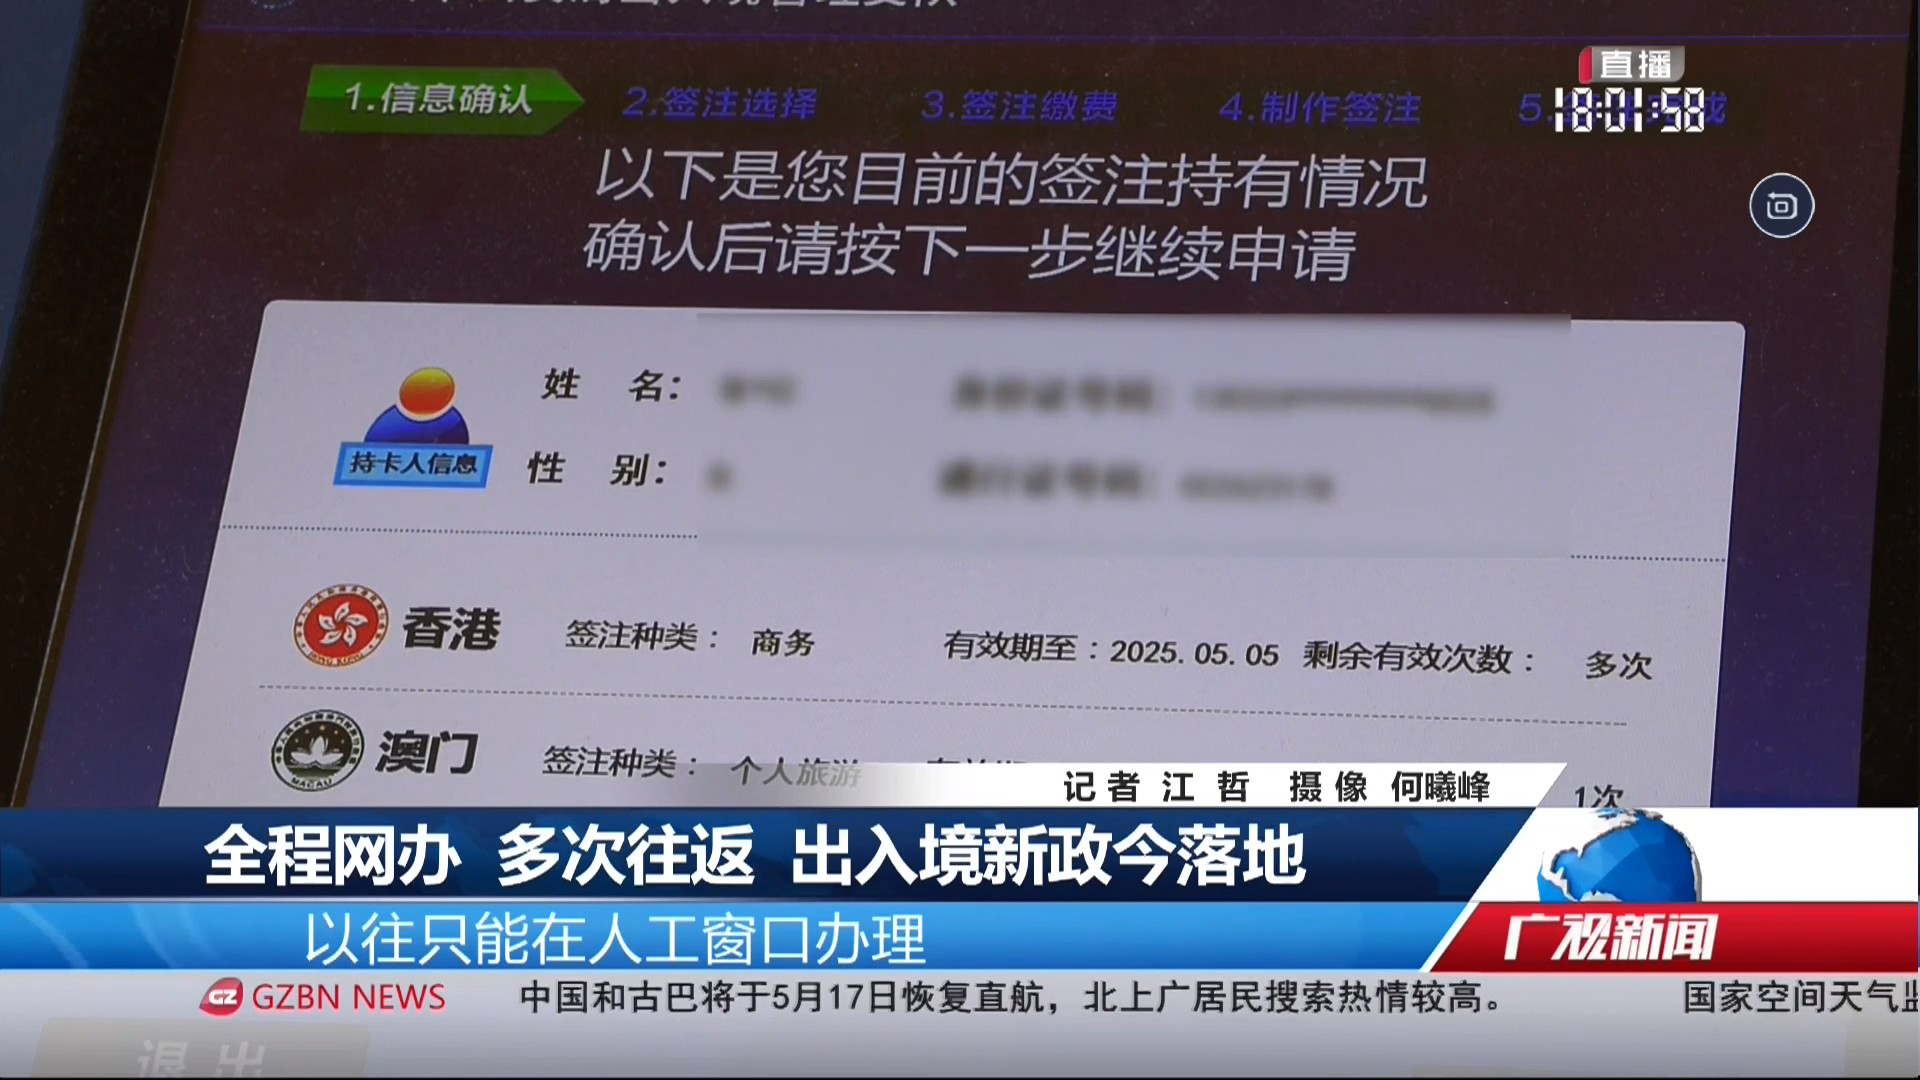 广州台综合频道 广视新闻 全程网办 多次往返 出入境新政今落地